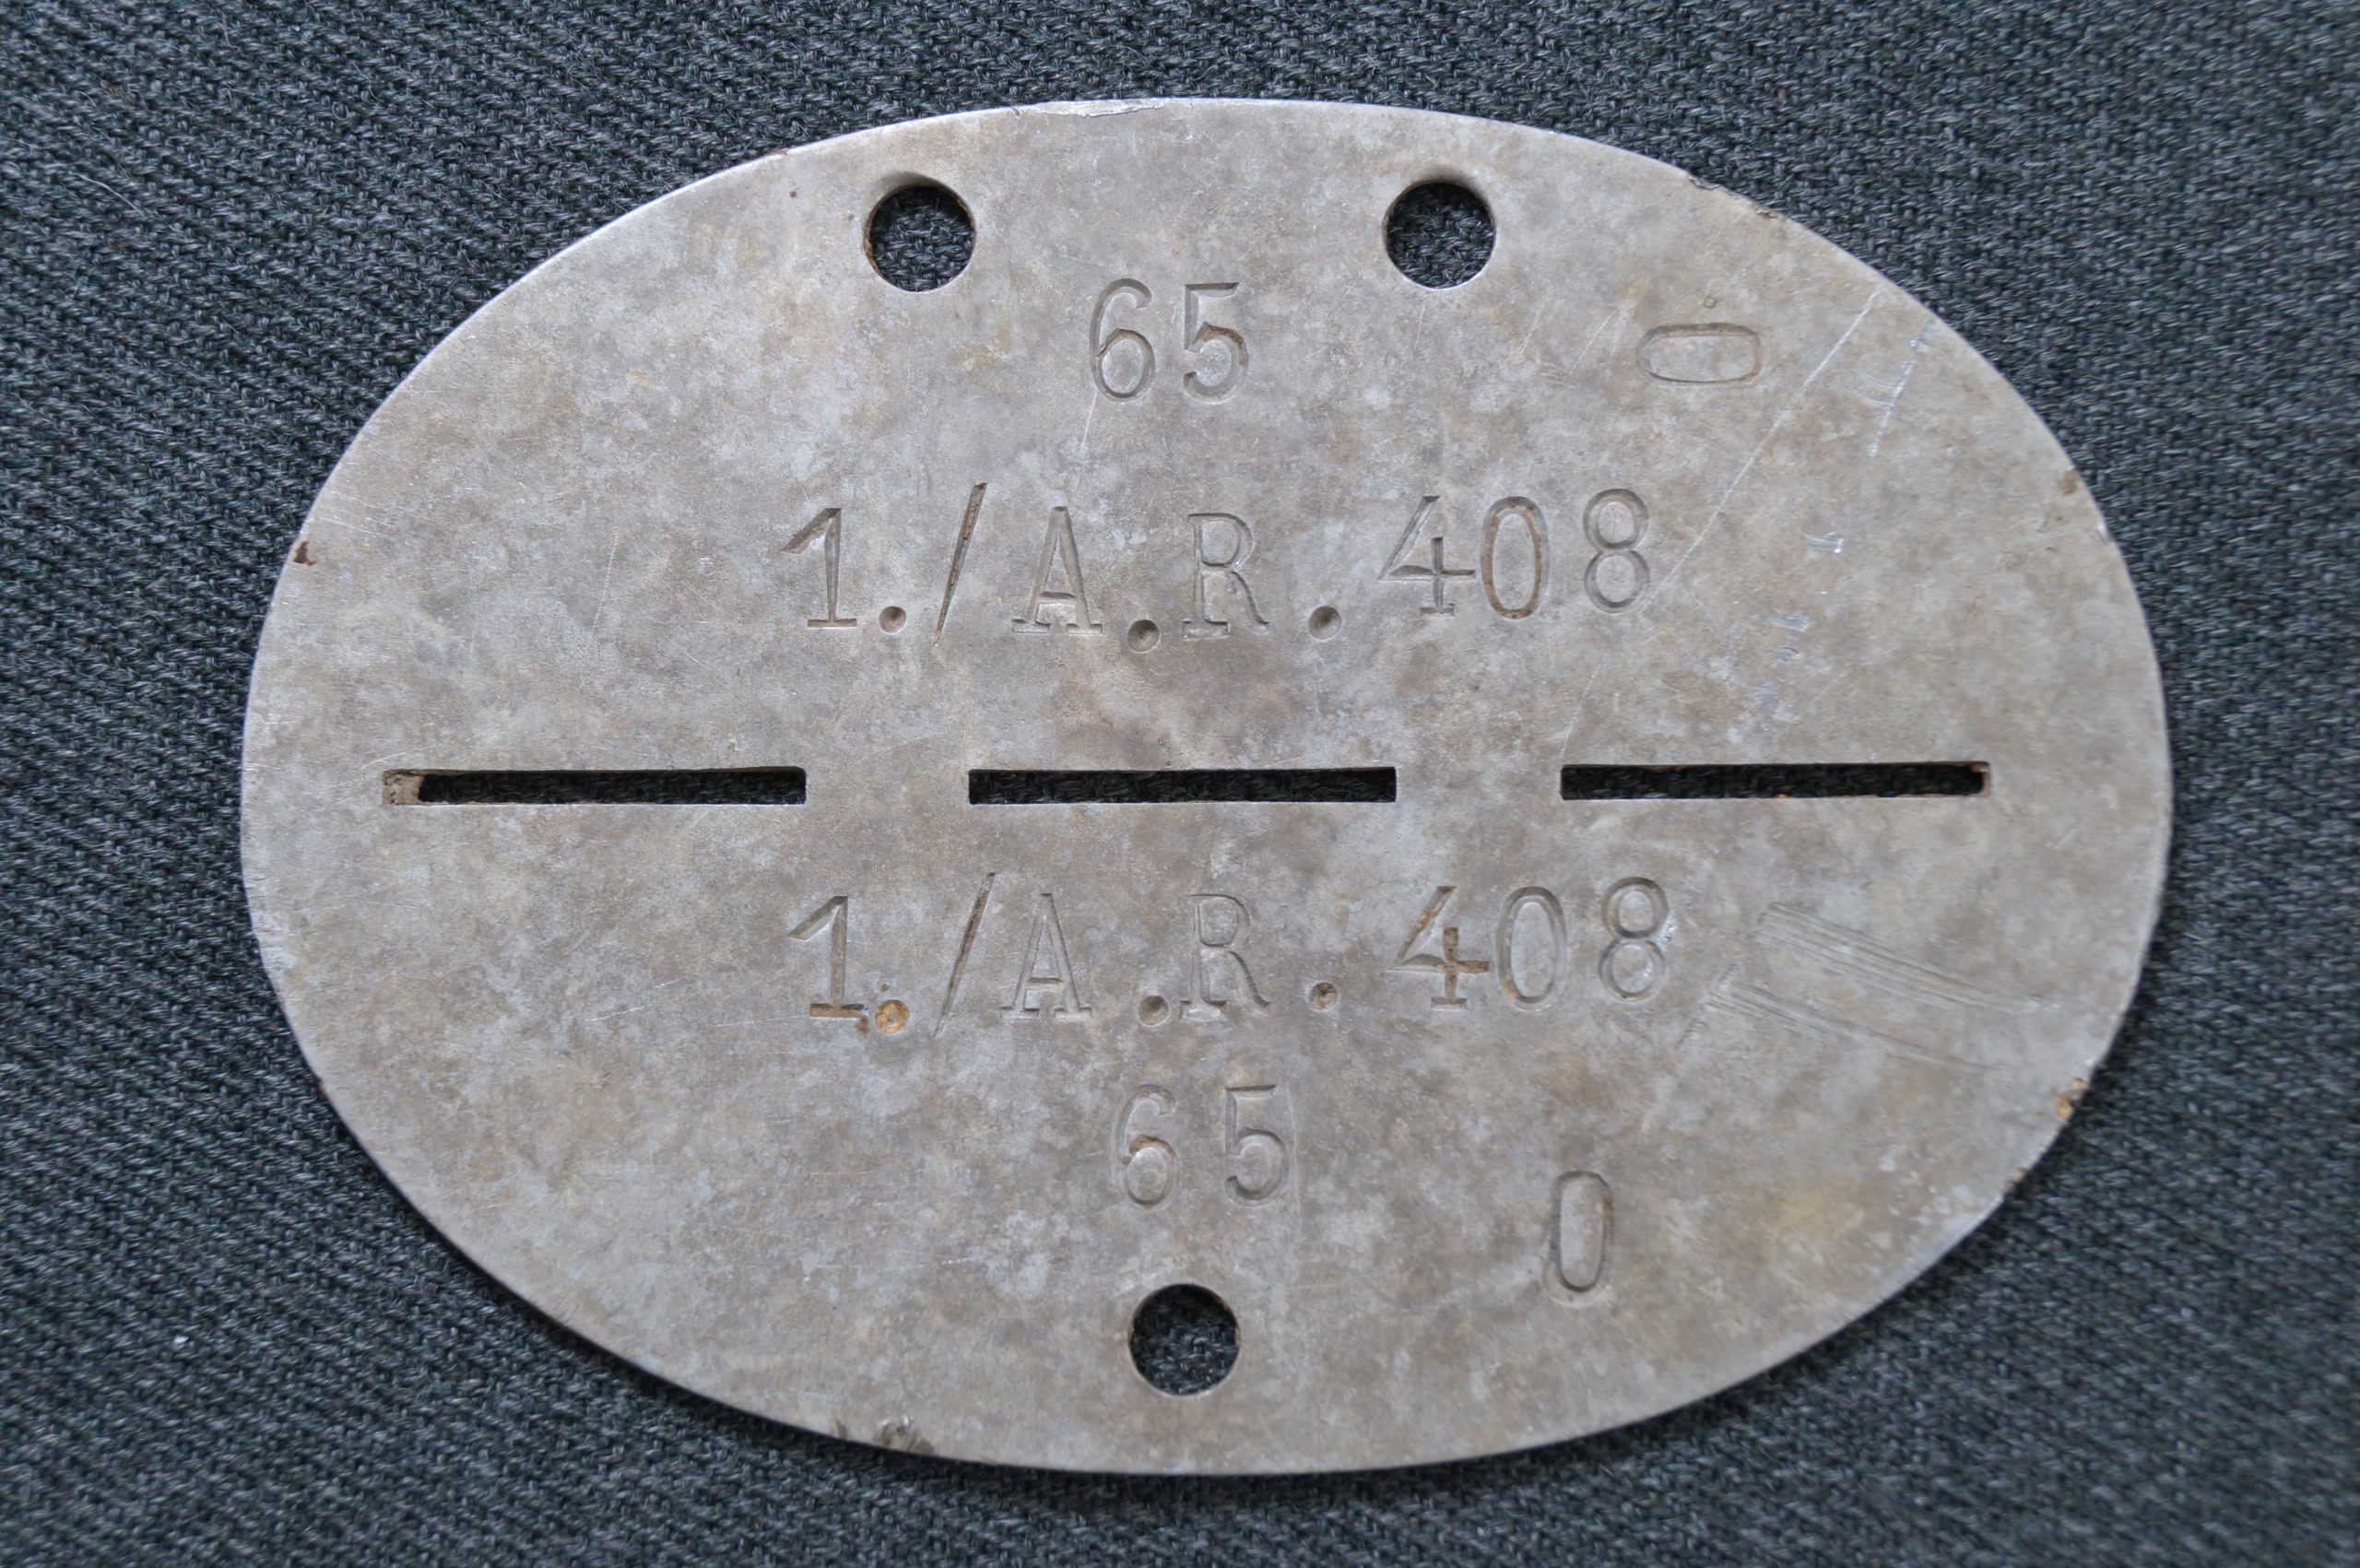 Личный опознавательный жетон немецкого солдата с личным номером и номером подразделения